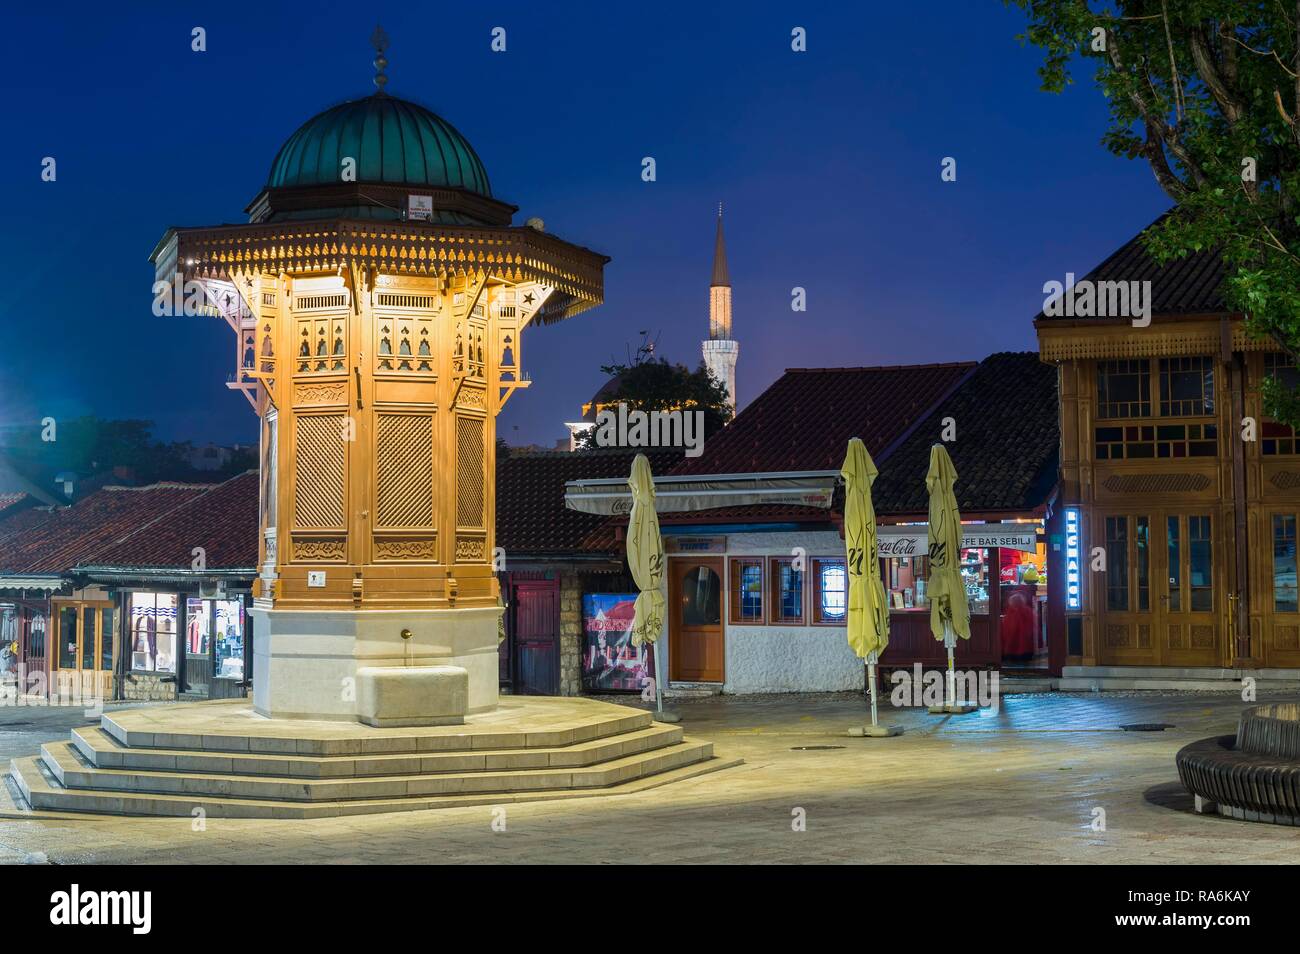 Sebilj illuminée fontaine en bois de style ottoman au lever du soleil, vieux bazar Bascarsija, Sarajevo, Bosnie et Herzégovine Banque D'Images